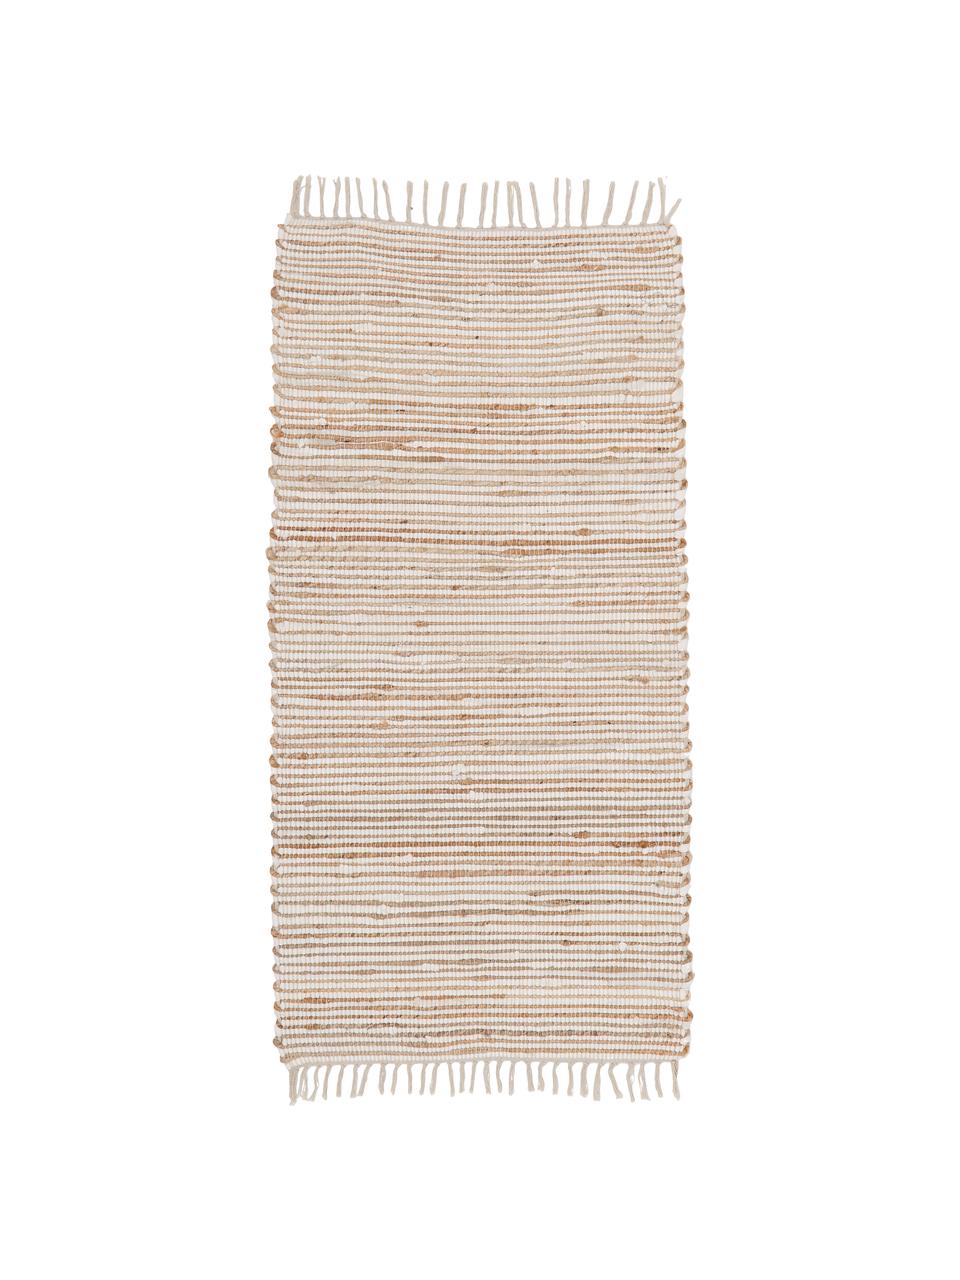 Dywan z bawełny/włókna konopnego Arlid, 60% bawełna, 40% włokno konopne, Kremowy, beżowy, S 60 x D 120 cm (Rozmiar XS)